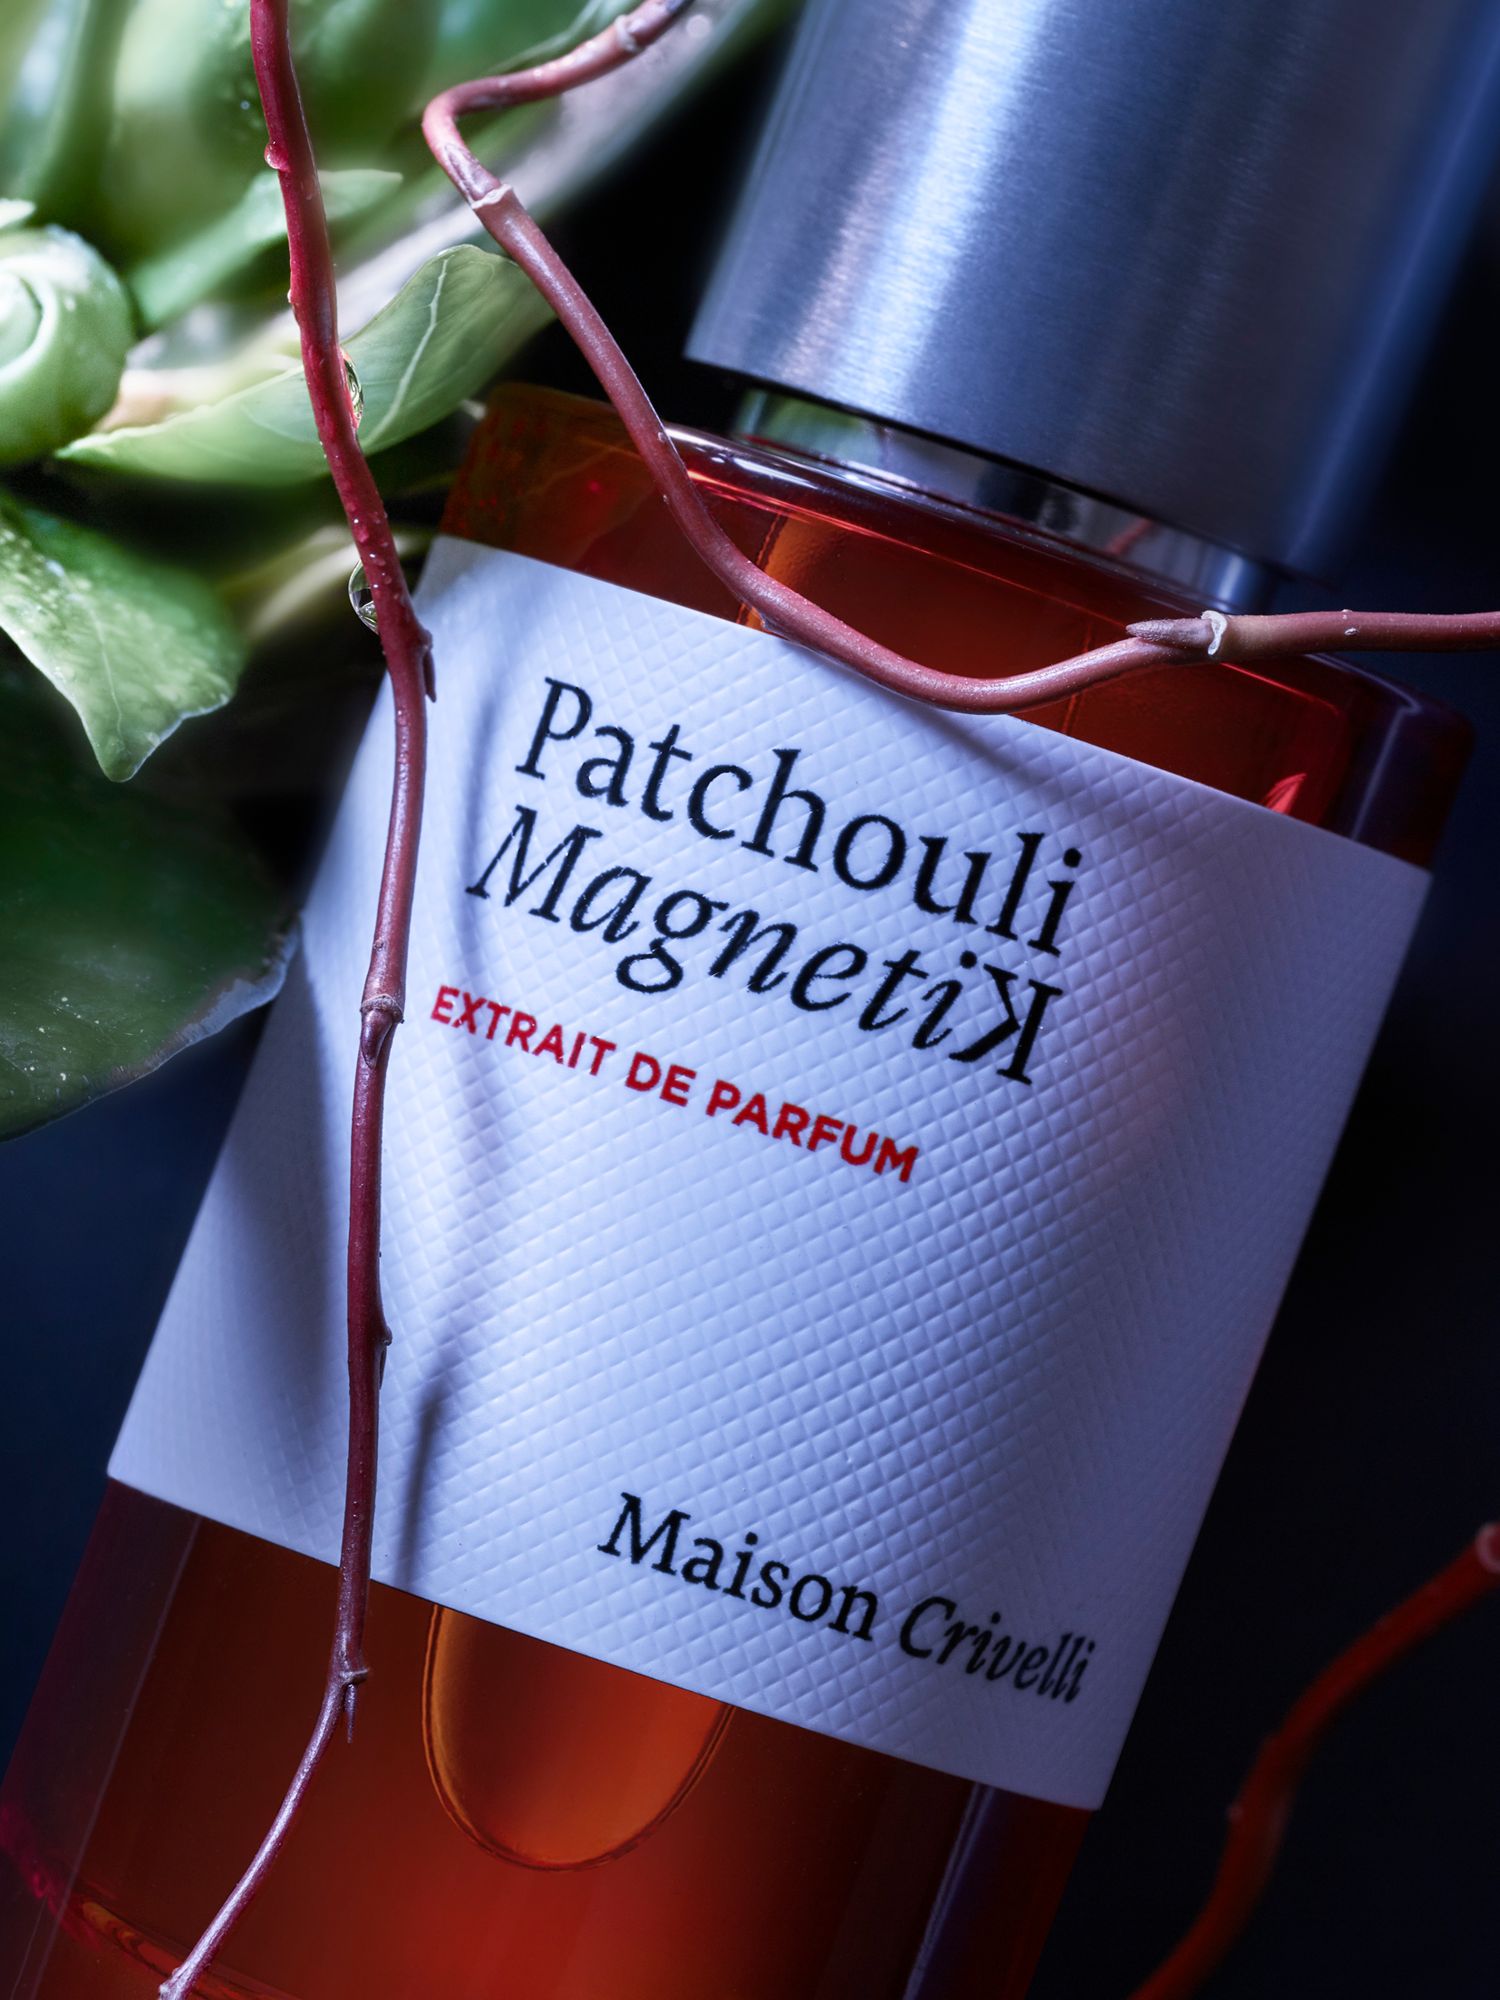 Maison Crivelli Patchouli Magnetik Extrait de Parfum, 50ml